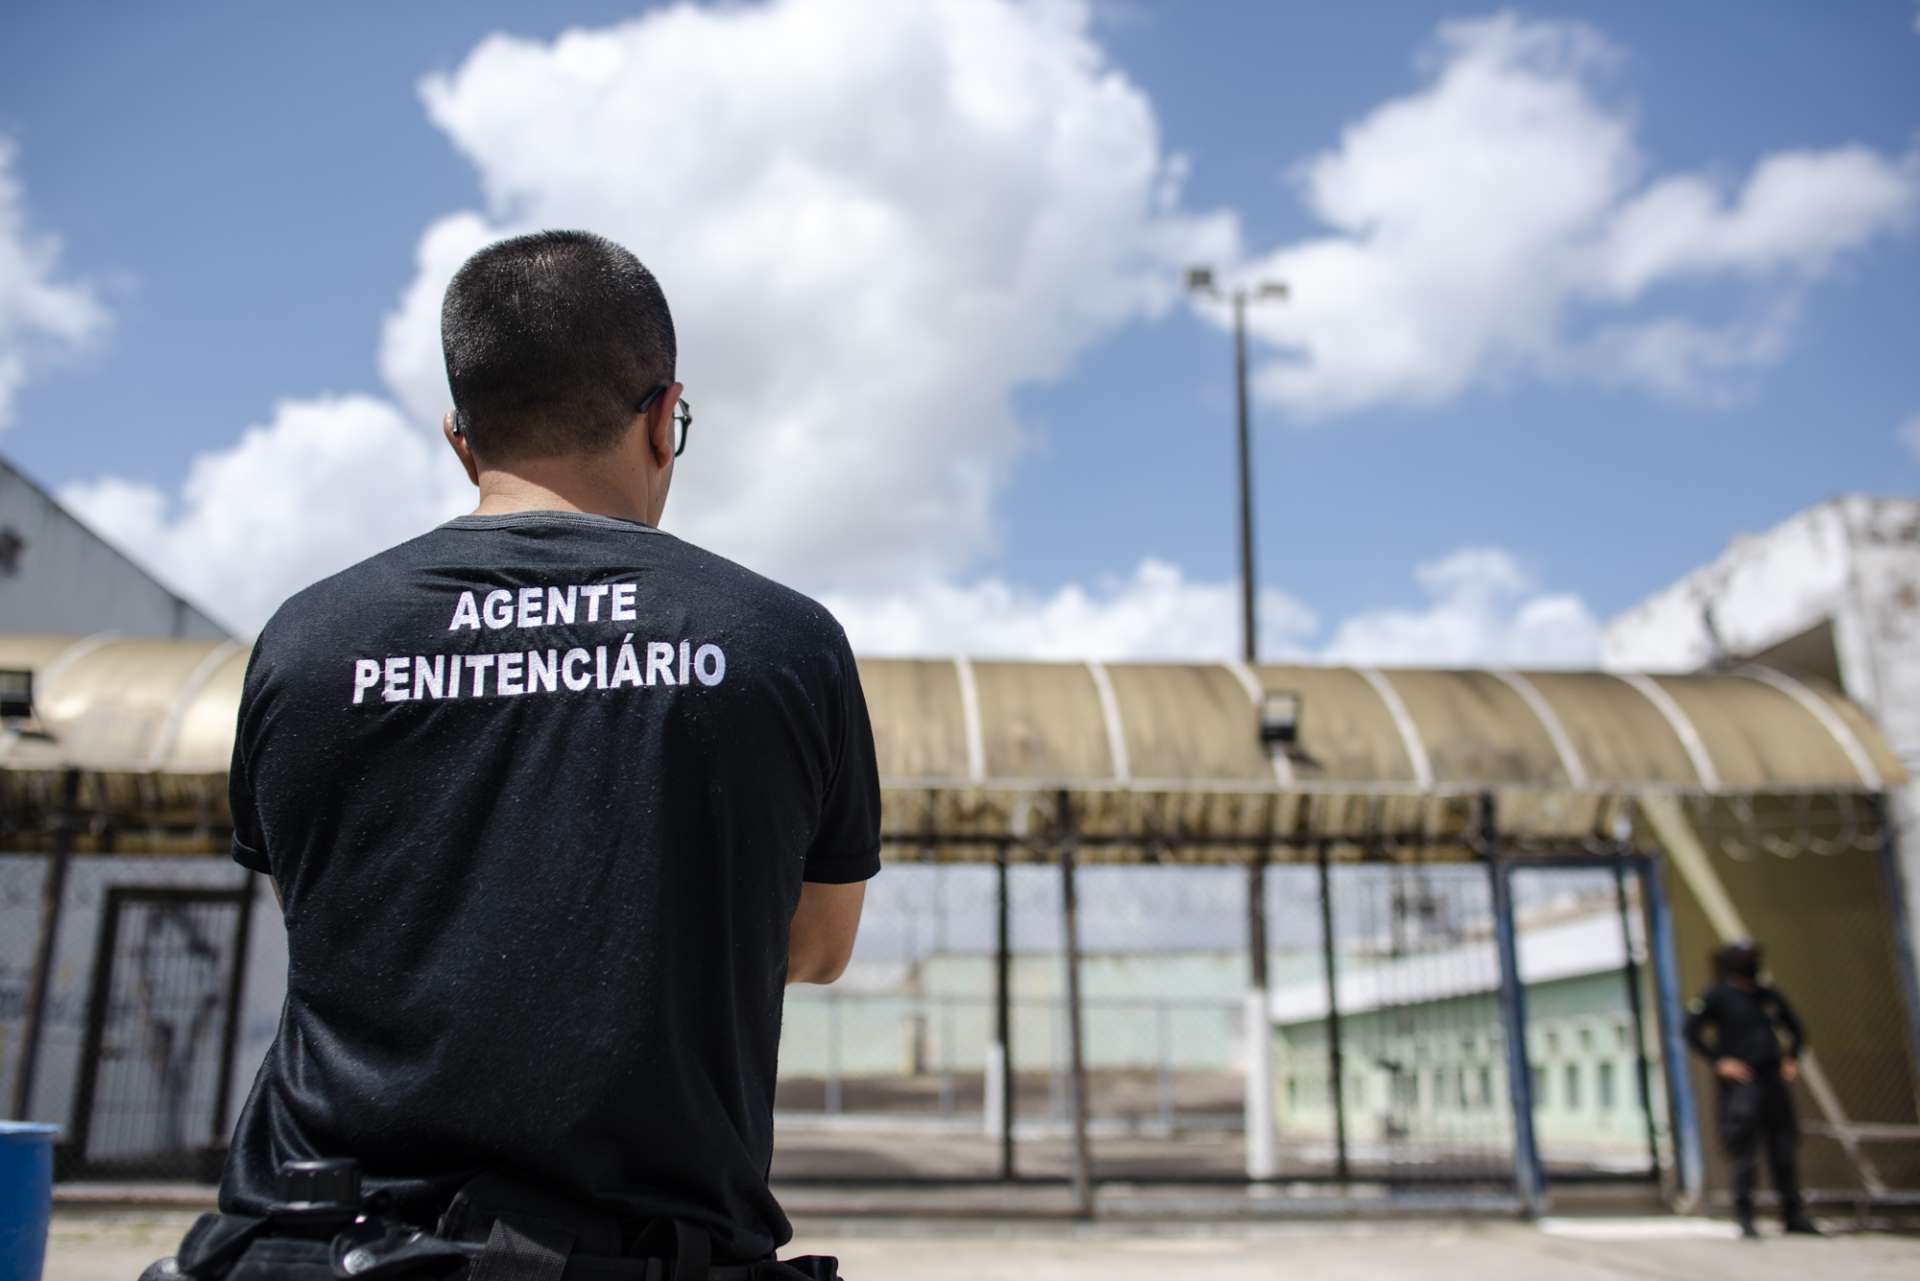 Os agentes penitenciários do Ceará foram transformados em polícia penal ainda em 2019, após a aprovação da Proposta de Emenda Constitucional (PEC) 04/20, que defendida mudança (Foto: ©DAVI PINHEIRO / GOV CEARA)